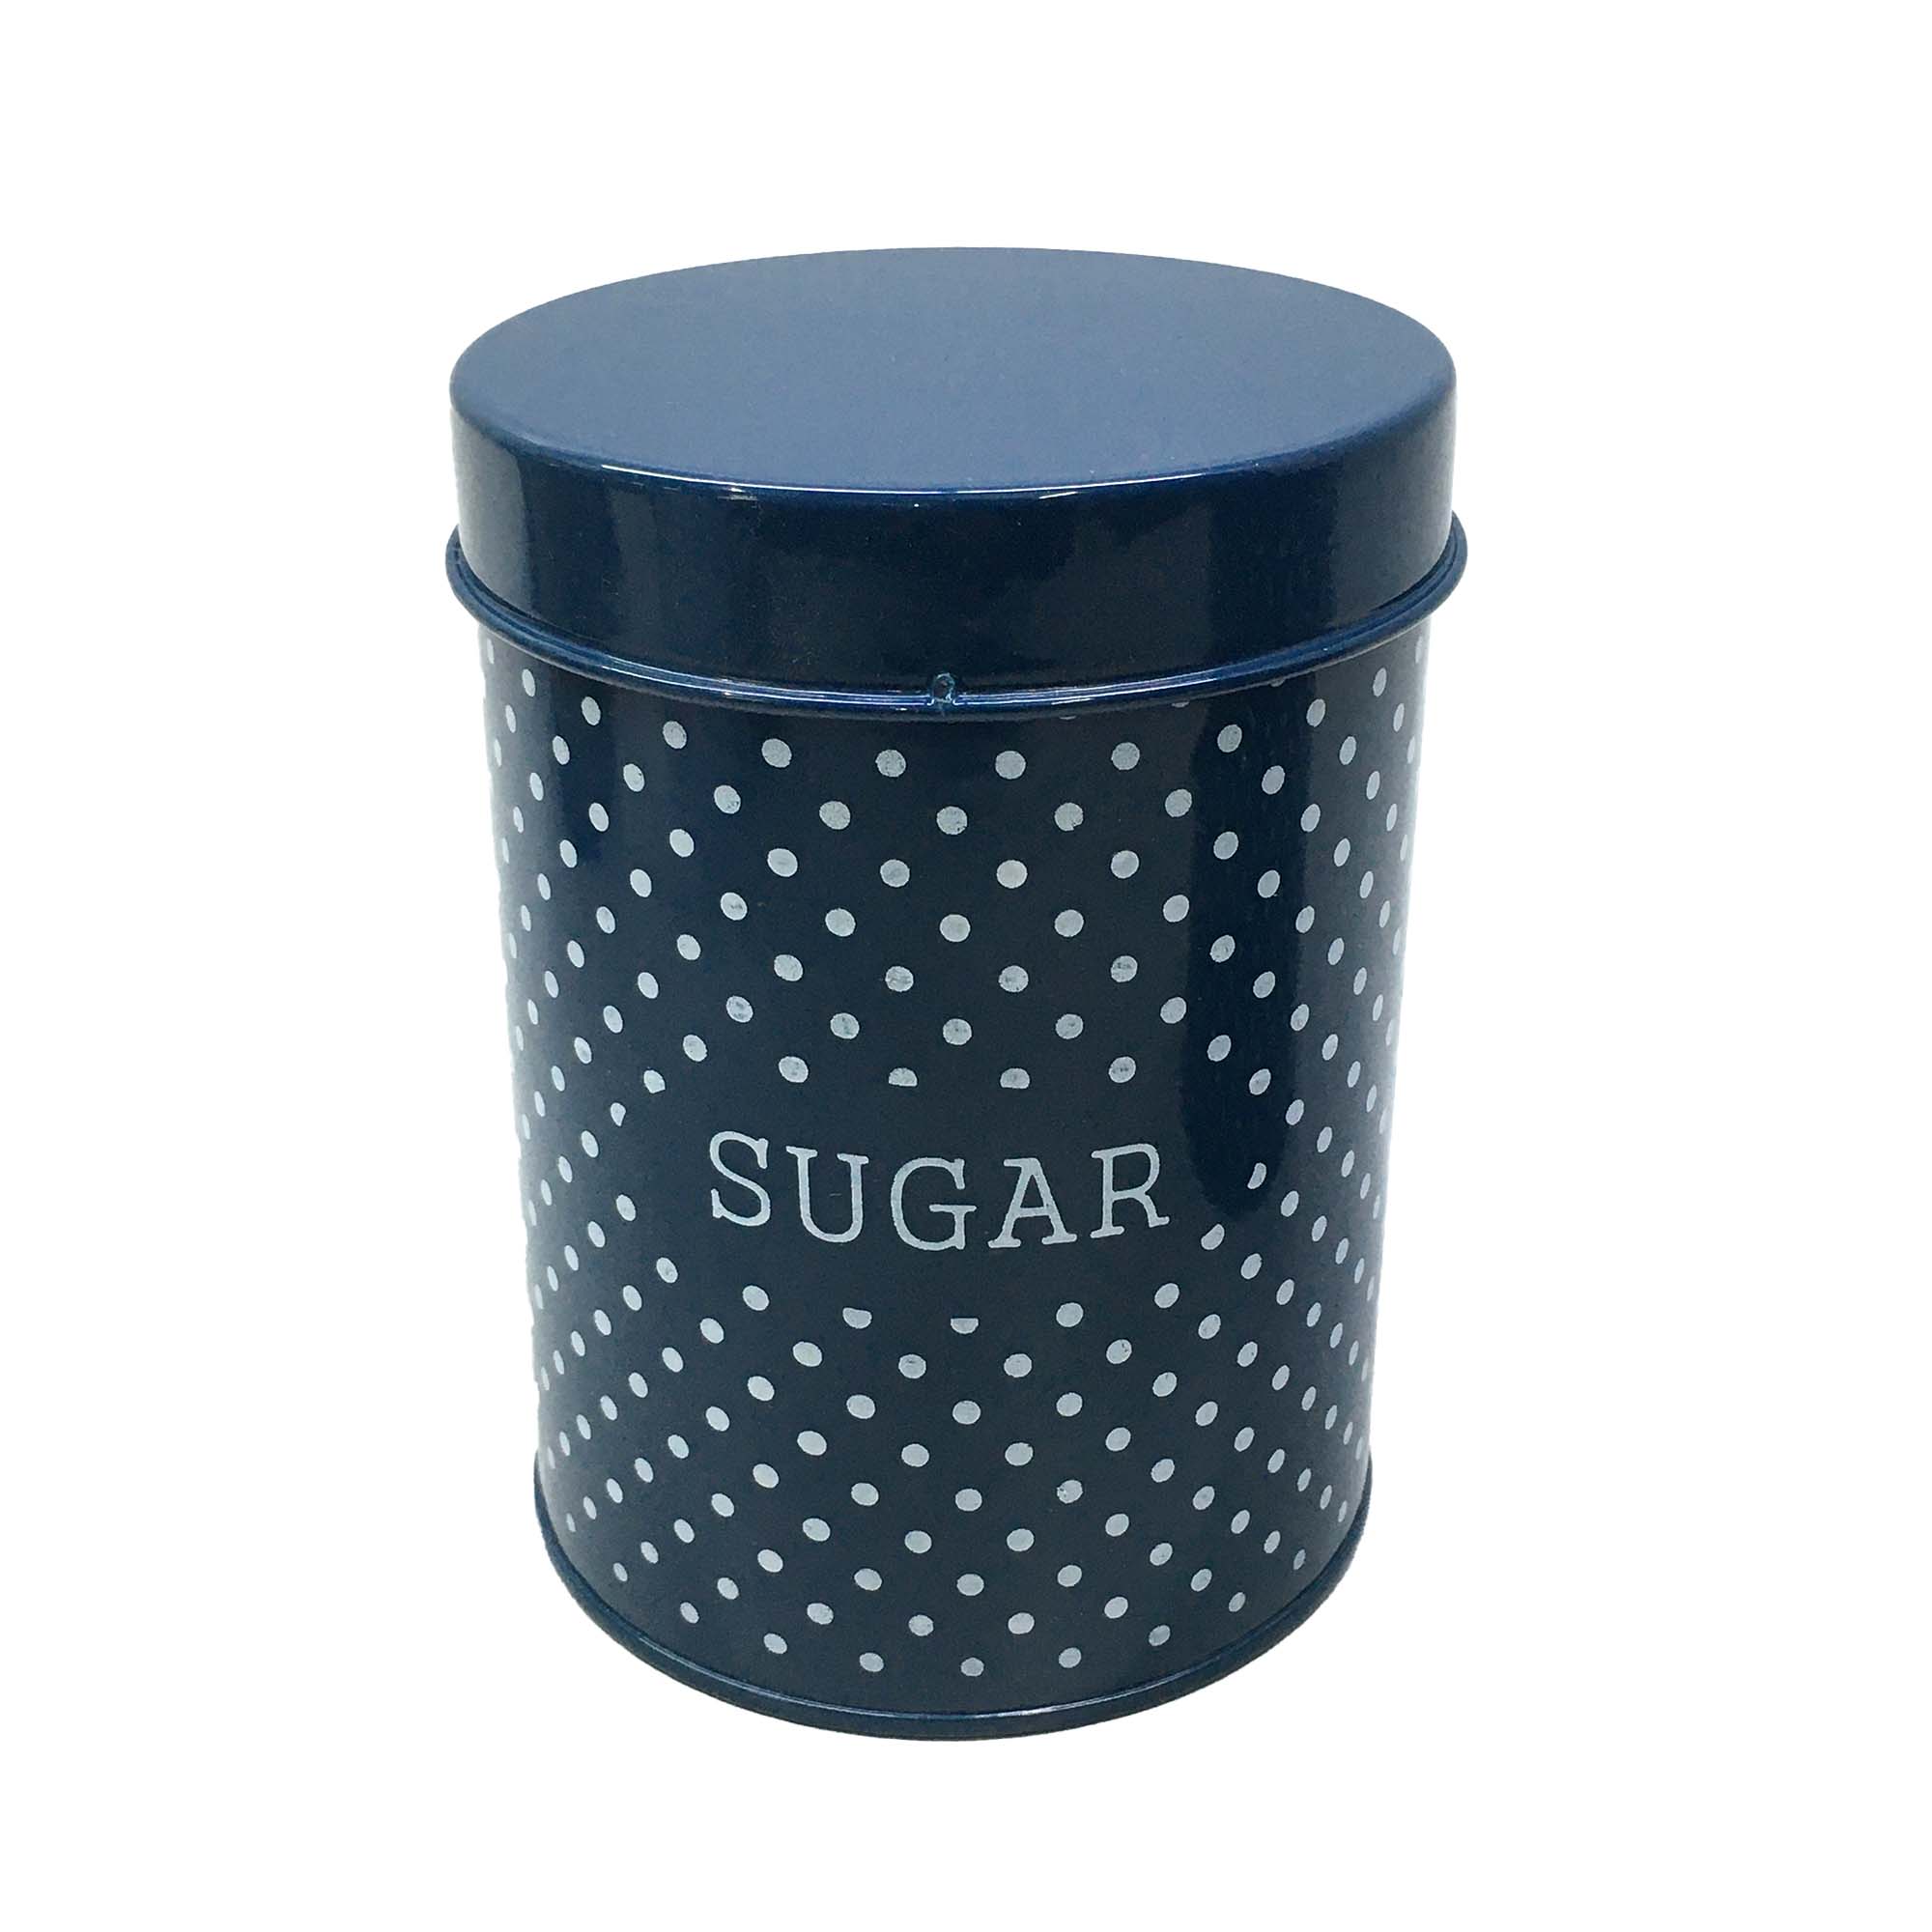 Vintage Tin Sugar Canister Blue & White Polka Dot 12x15cm